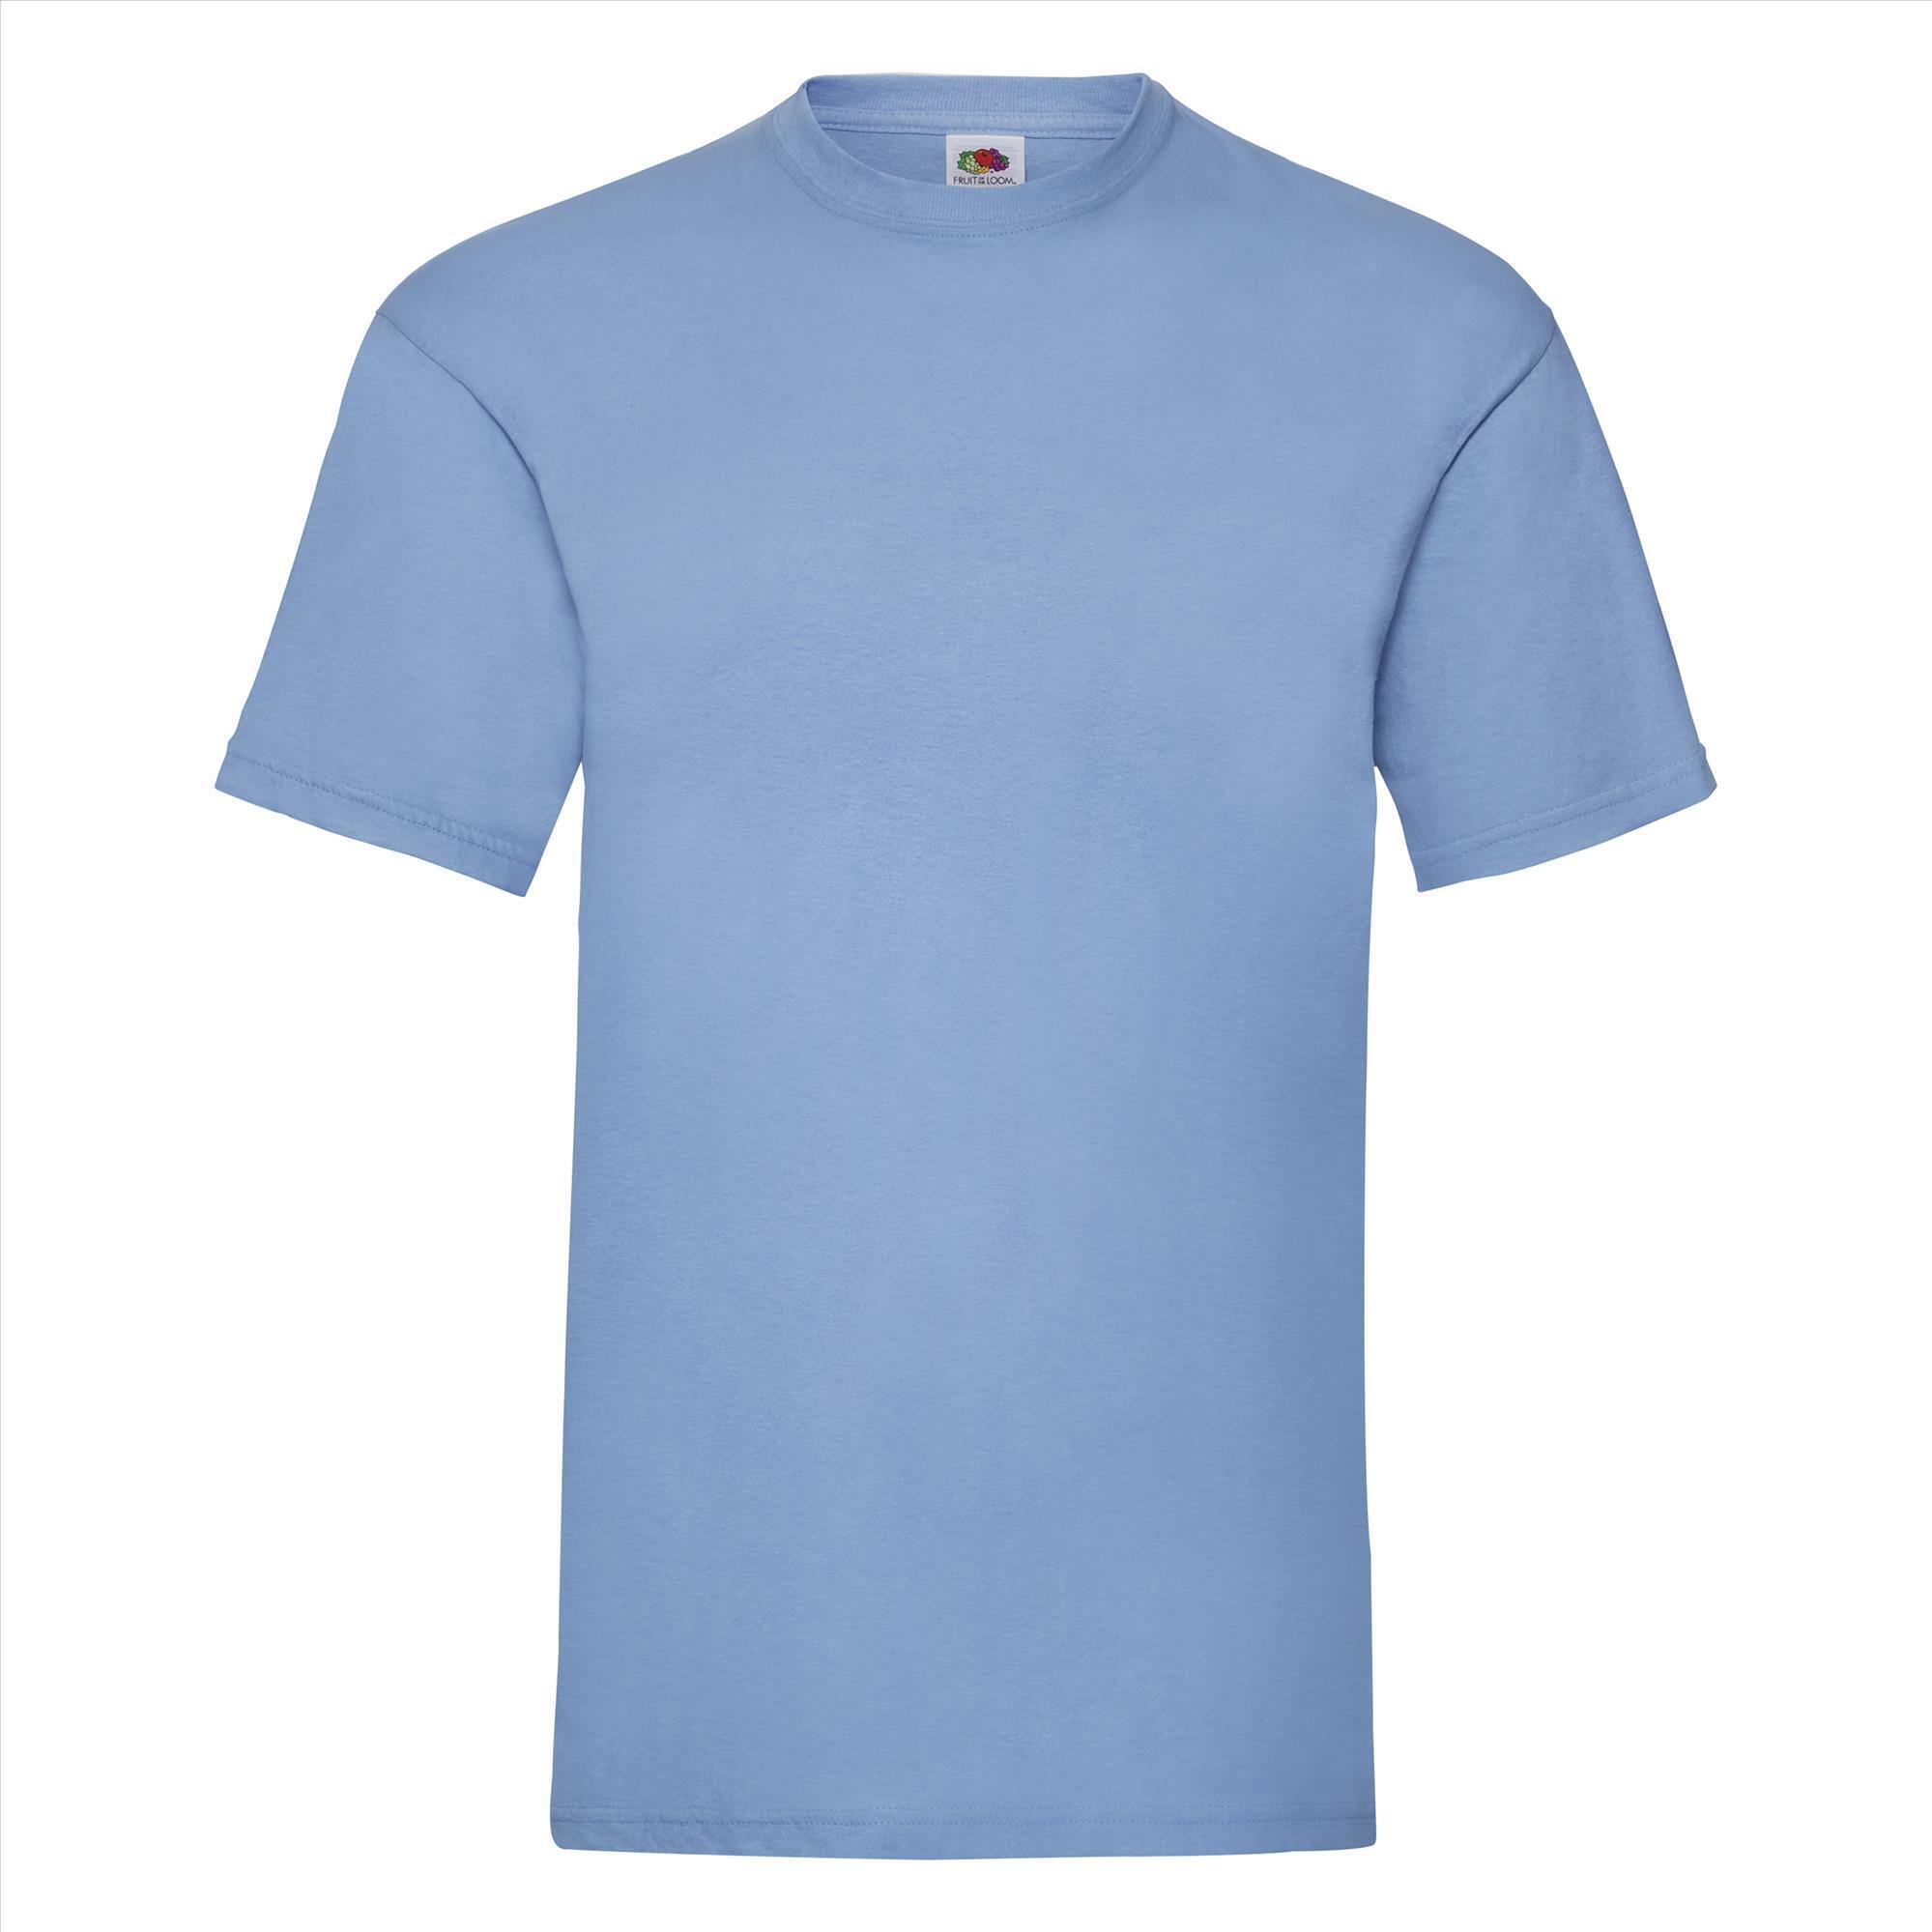 T-shirt voor mannen hemelsblauw personaliseren T-shirt bedrukken